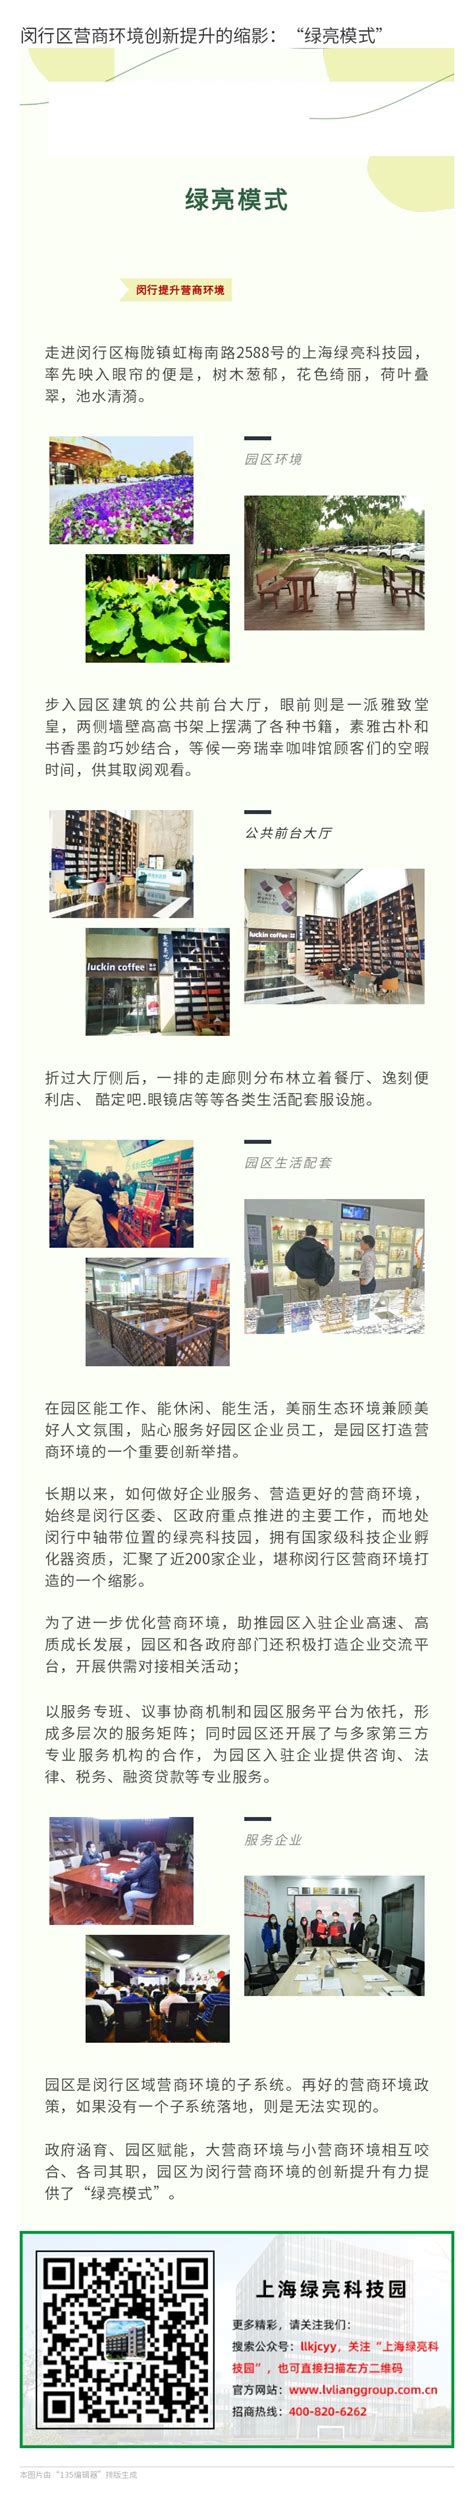 闵行区2019年企业创新情况简析_统计分析_上海市闵行区人民政府网站